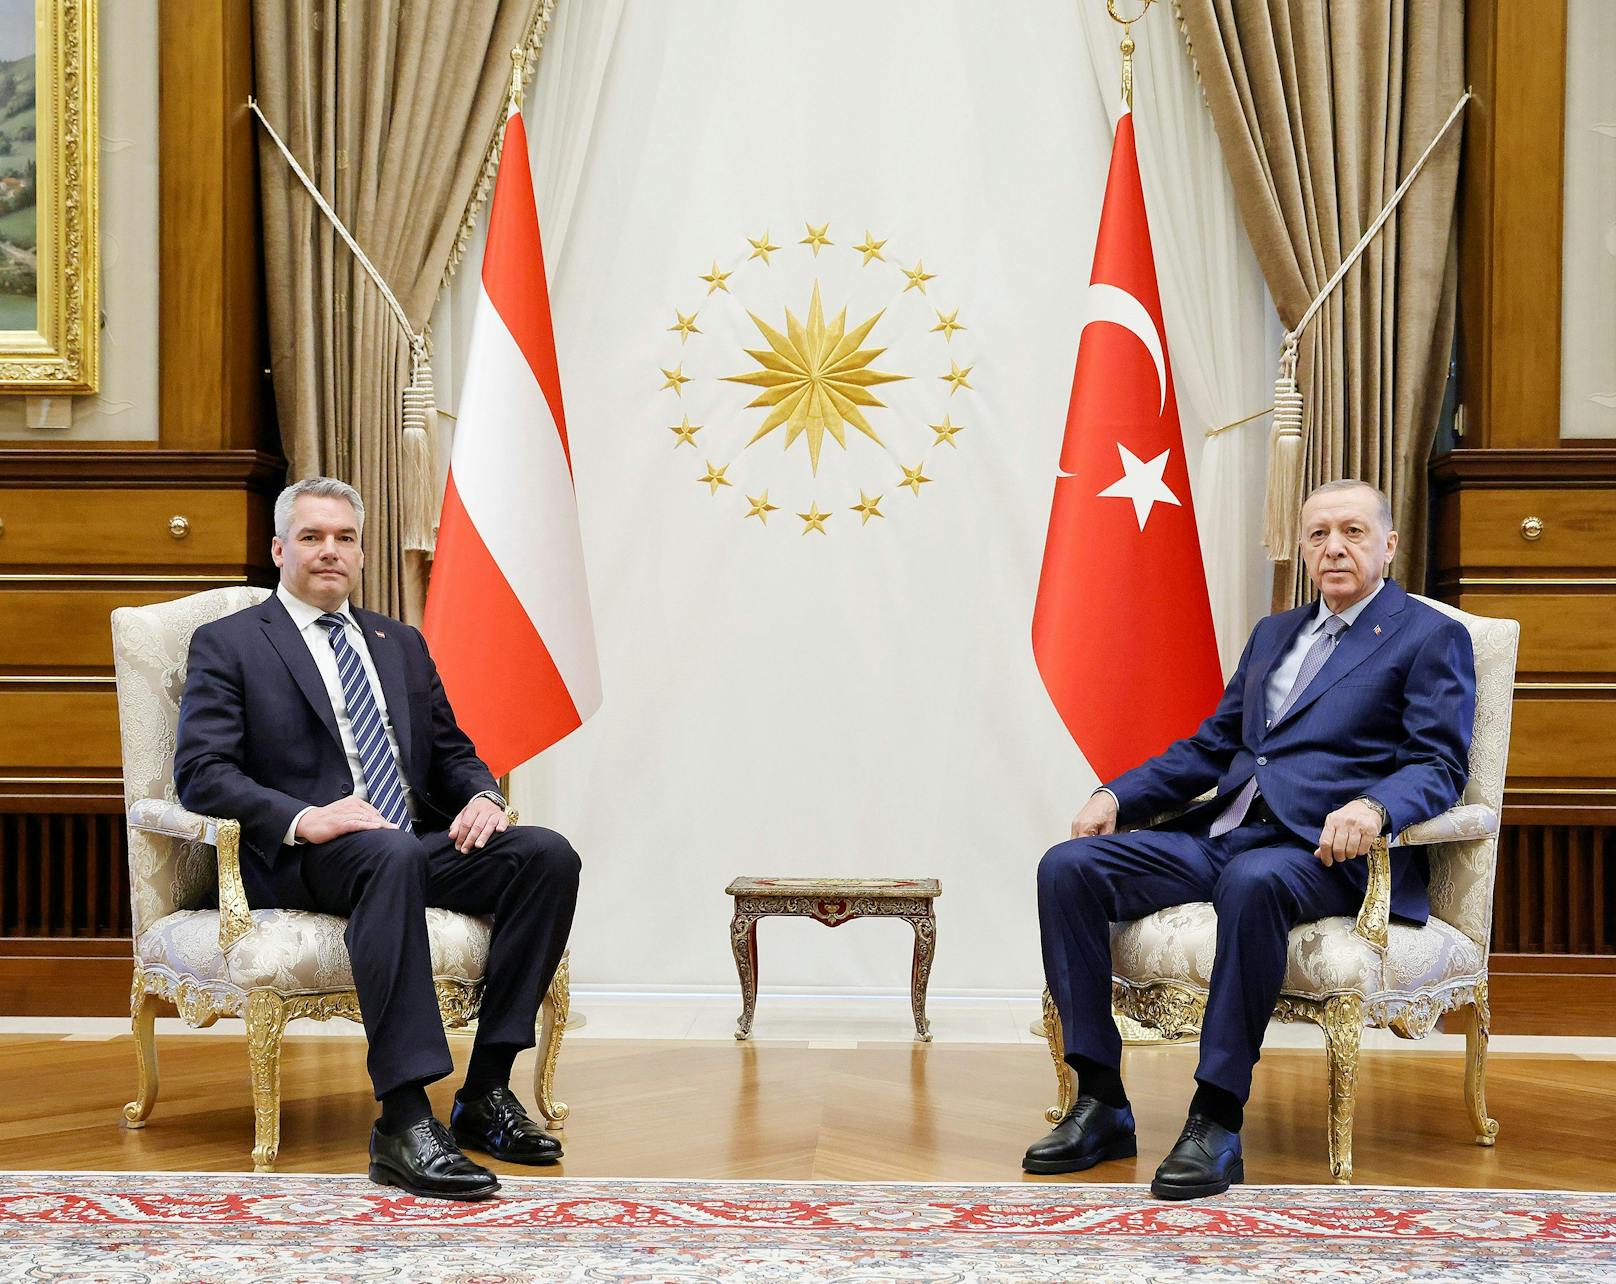 Nehammer widerspricht Erdogan auf offener Bühne